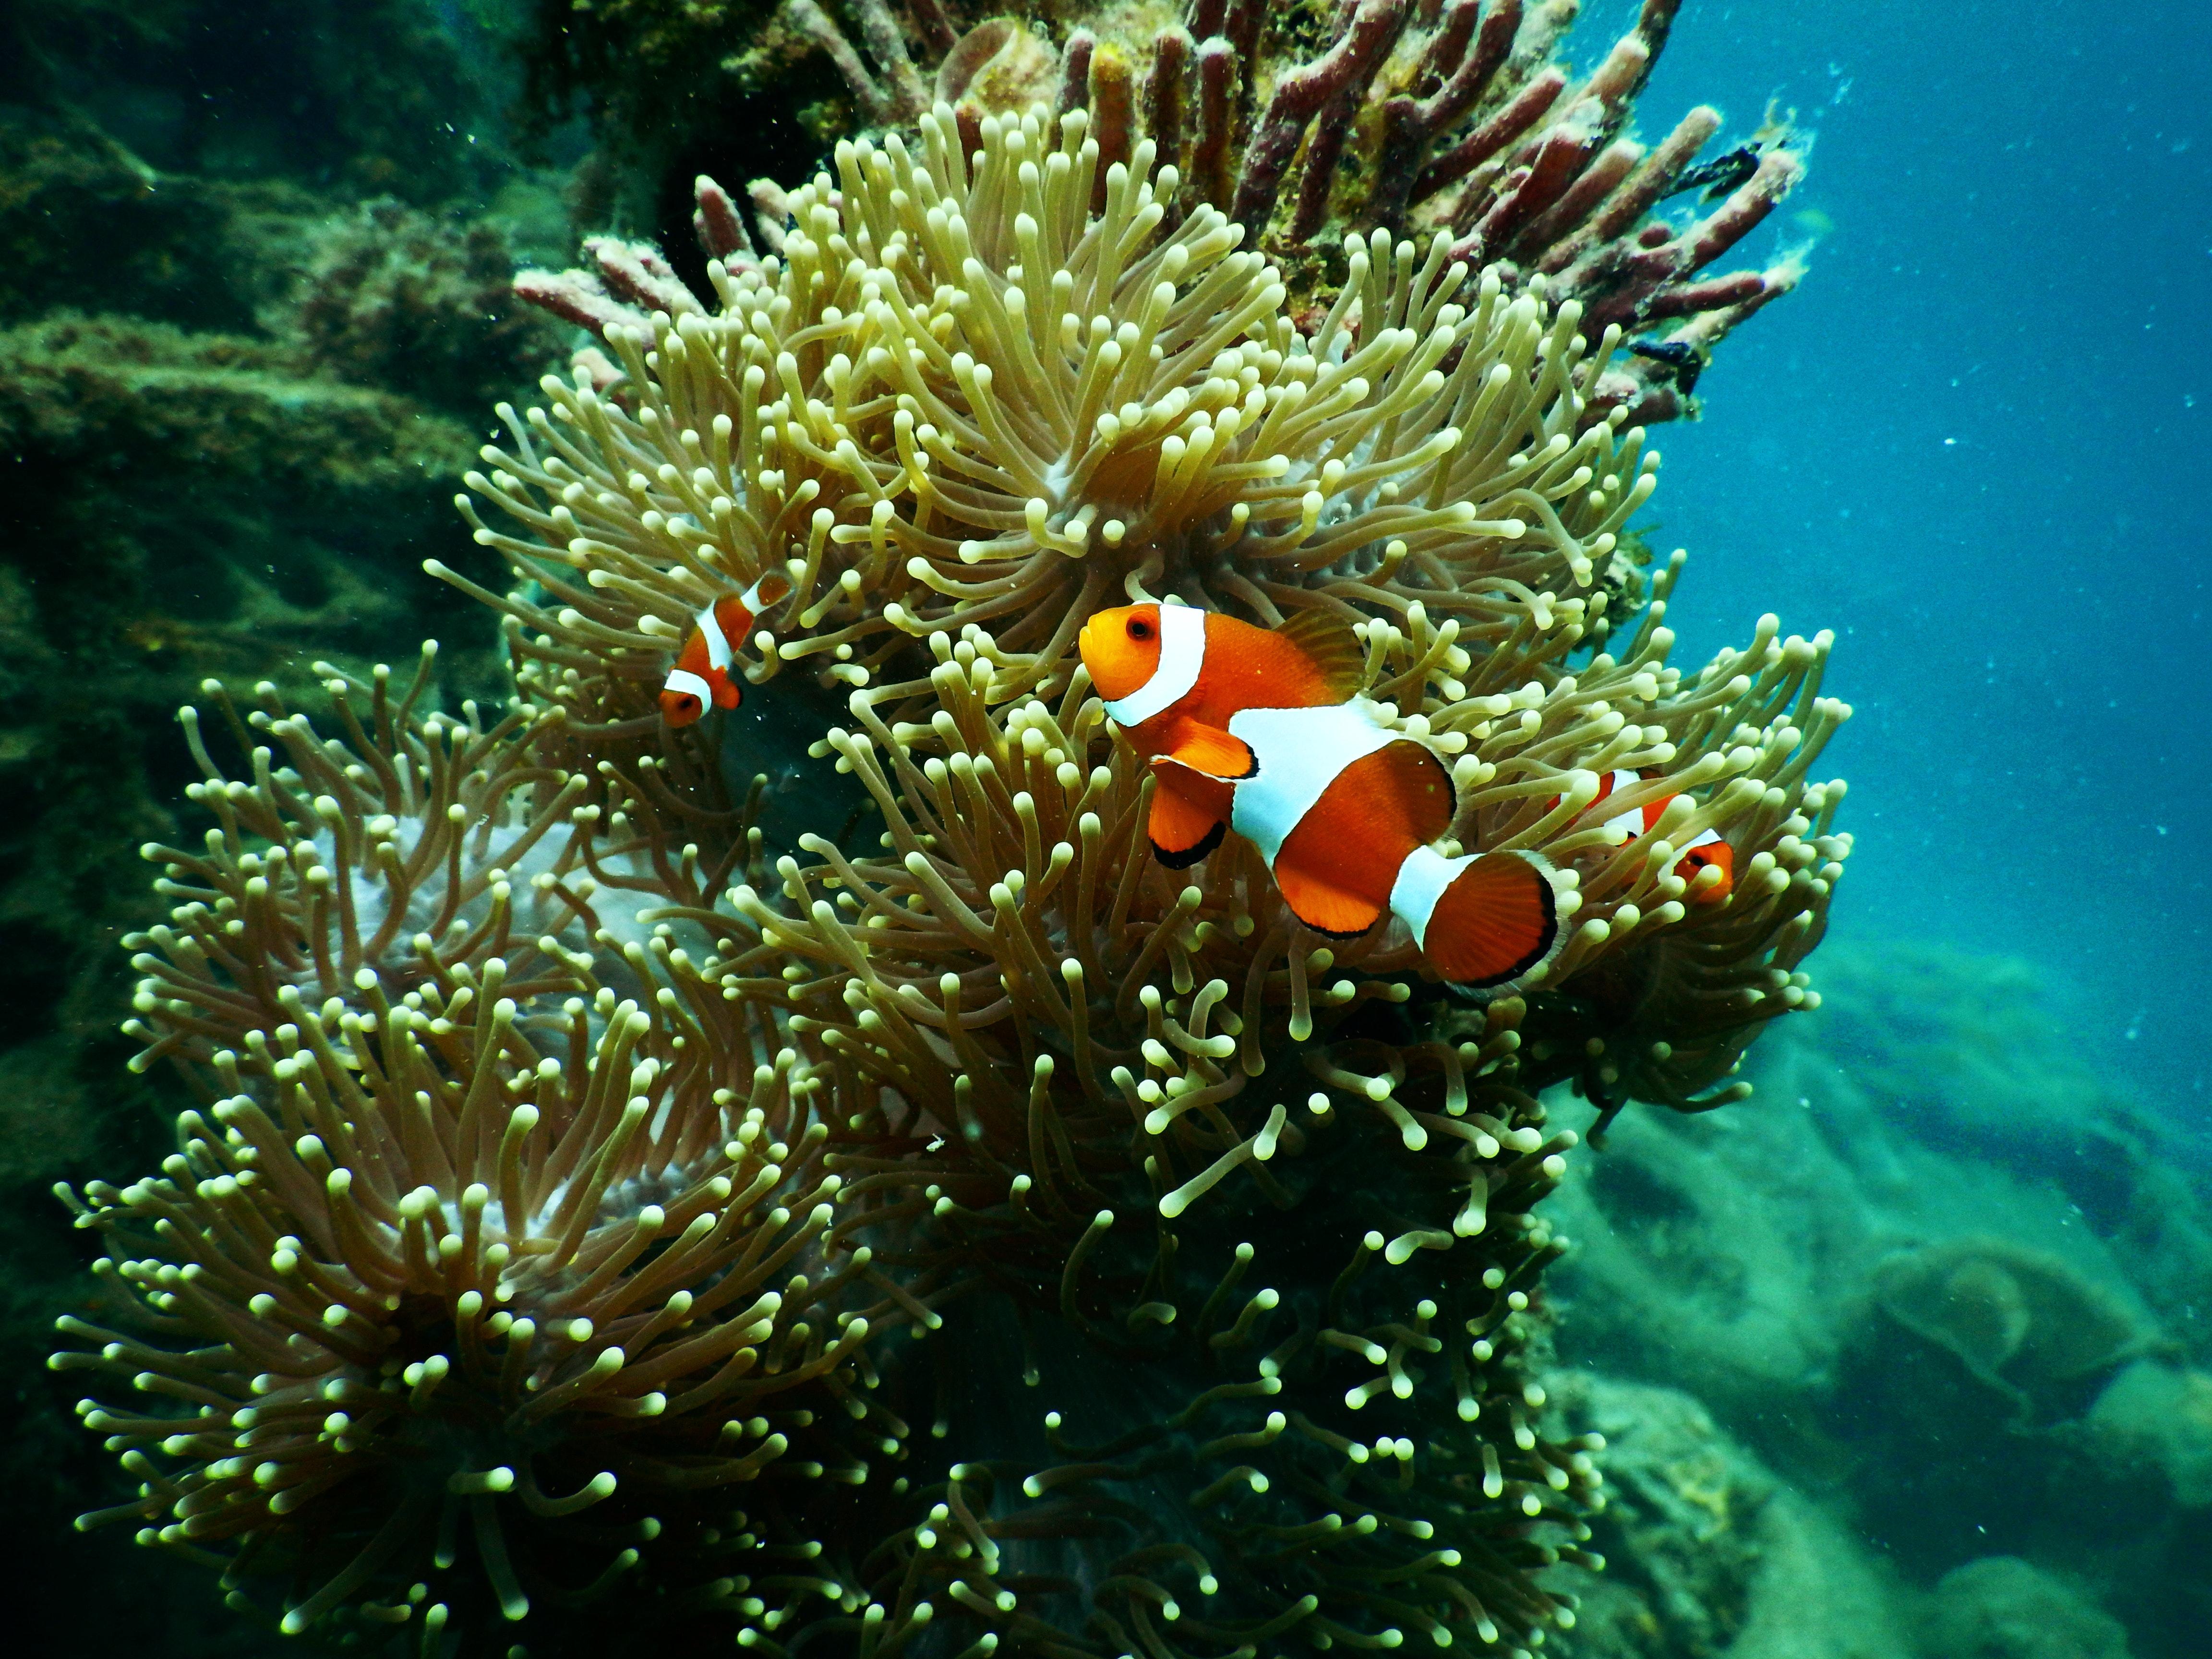 EM2 aquarium aquatic clown fish 1125979 1